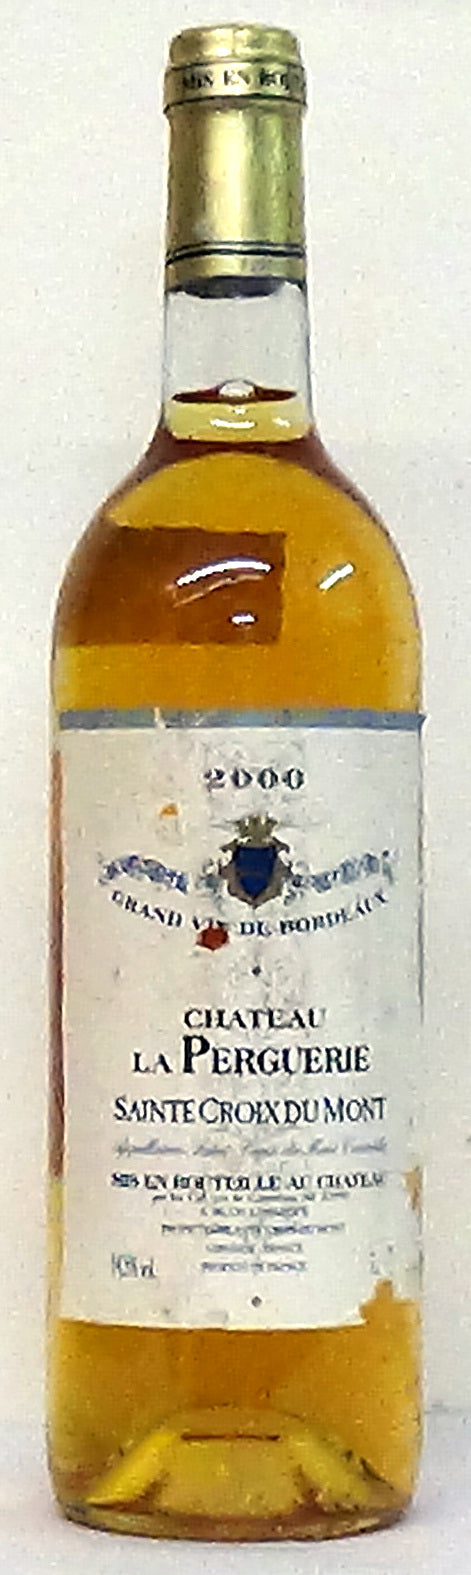 2000 Chateau La Perguerie Sainte Croix du Mont